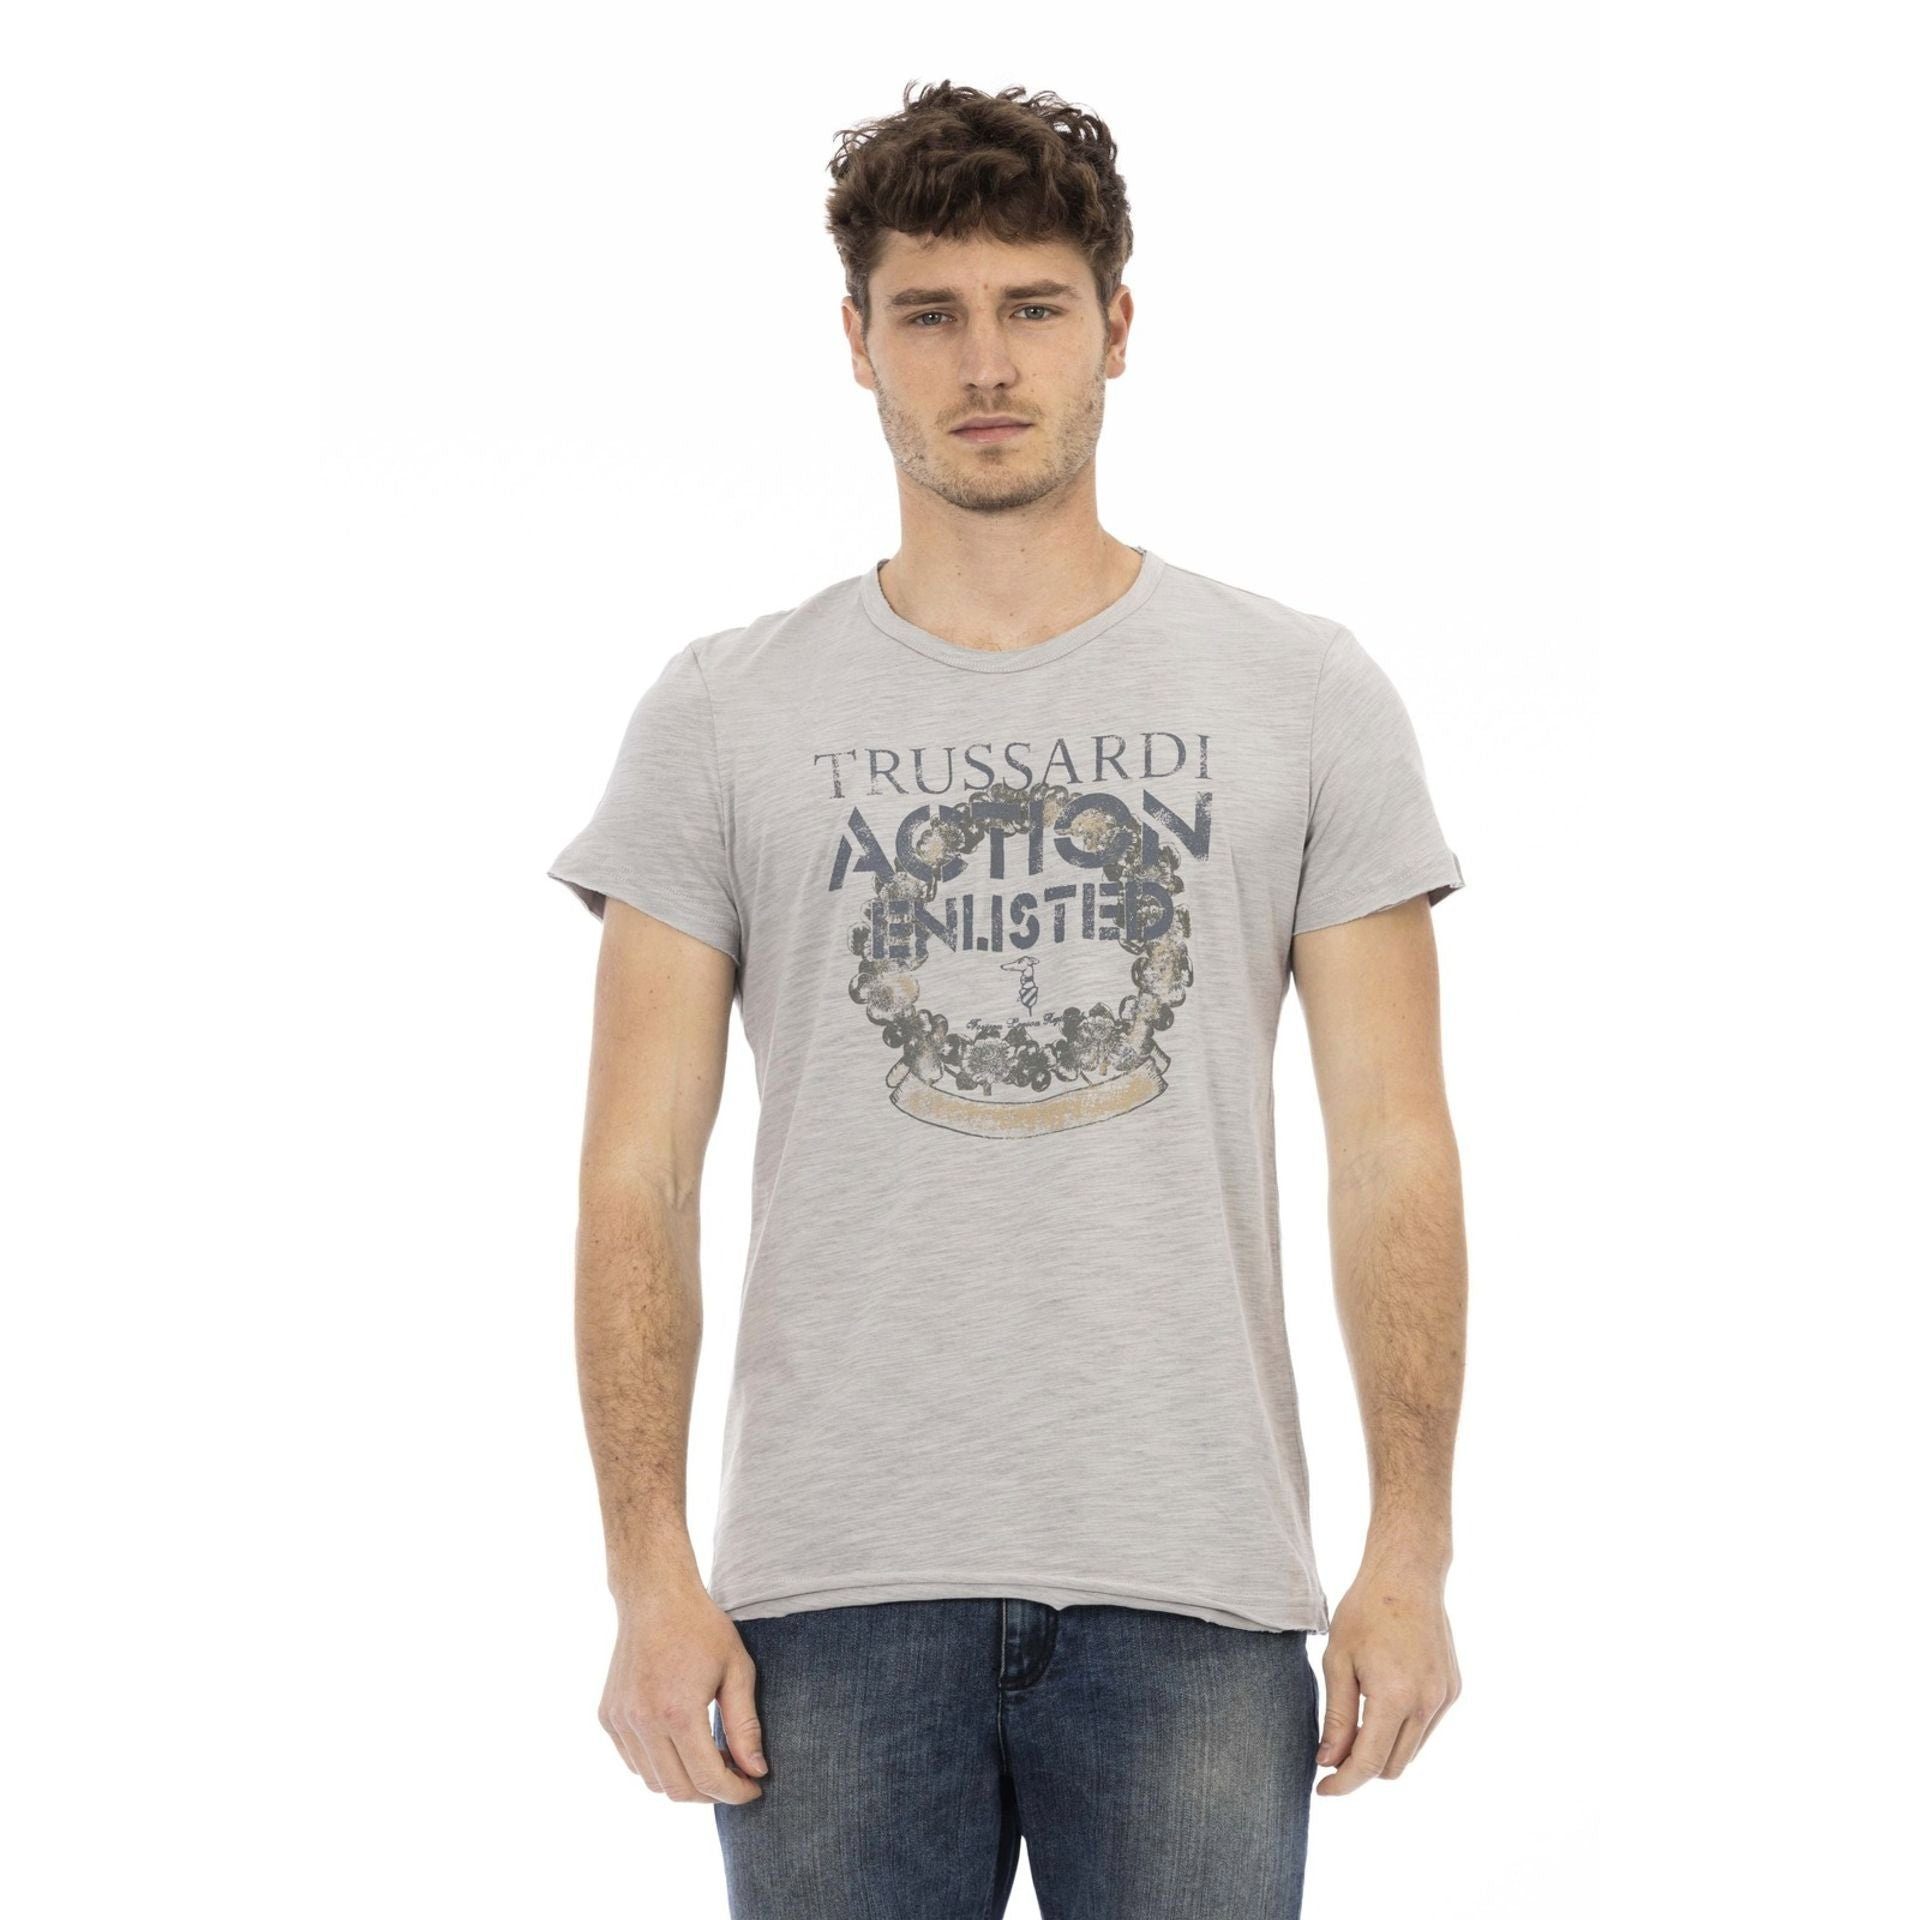 Trussardi T-Shirt das Es aus, verleiht Note aber das sich Grau T-Shirts, eine Logo-Muster zeichnet Trussardi stilvolle Action durch subtile